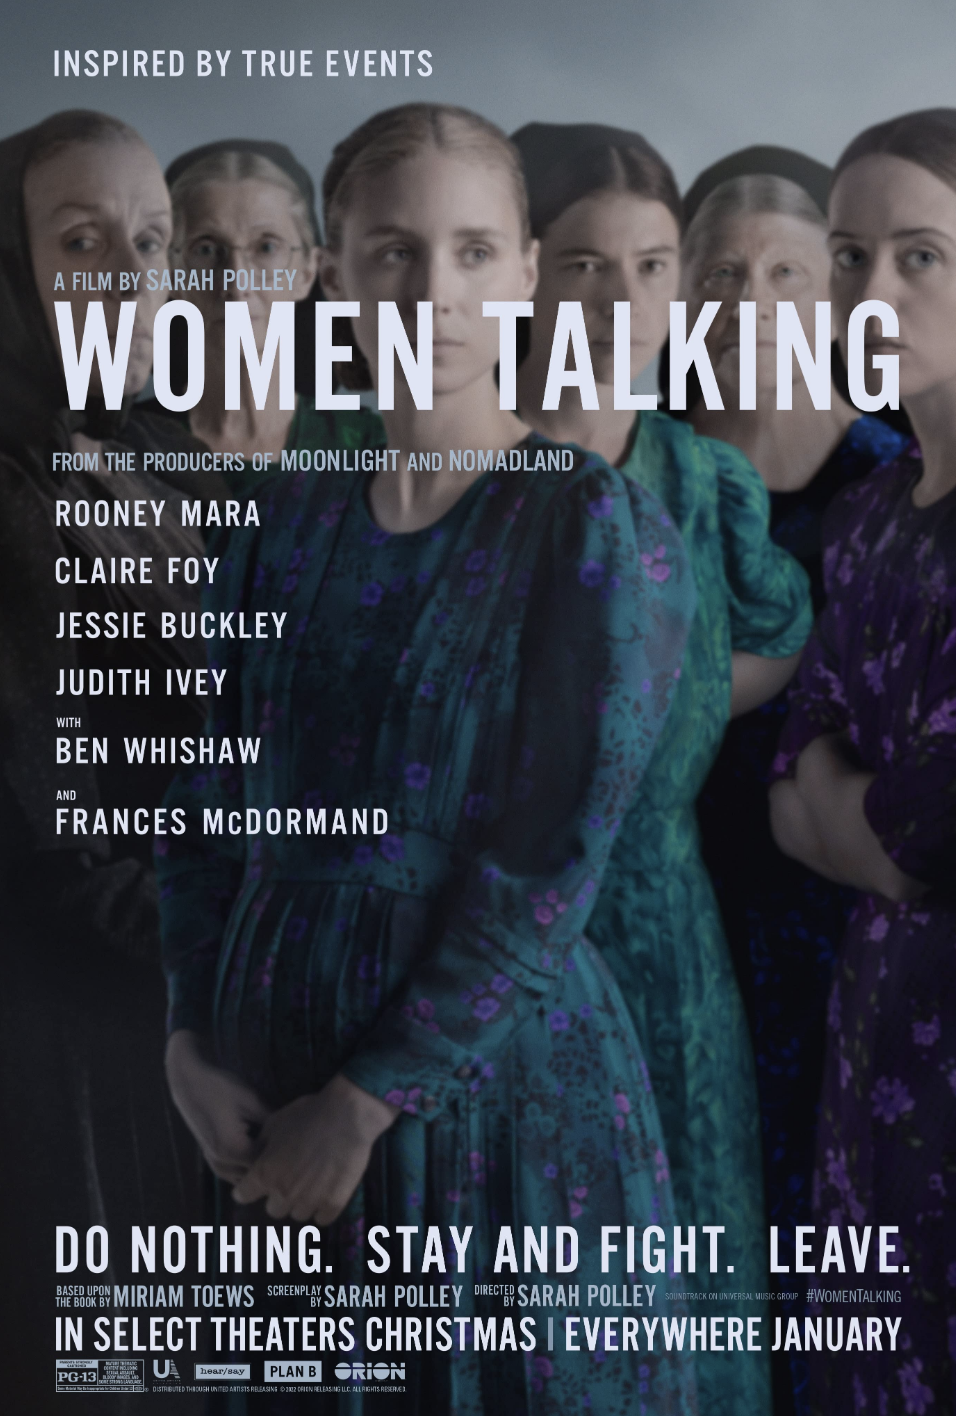 Women Talking image © United Artists Releasing